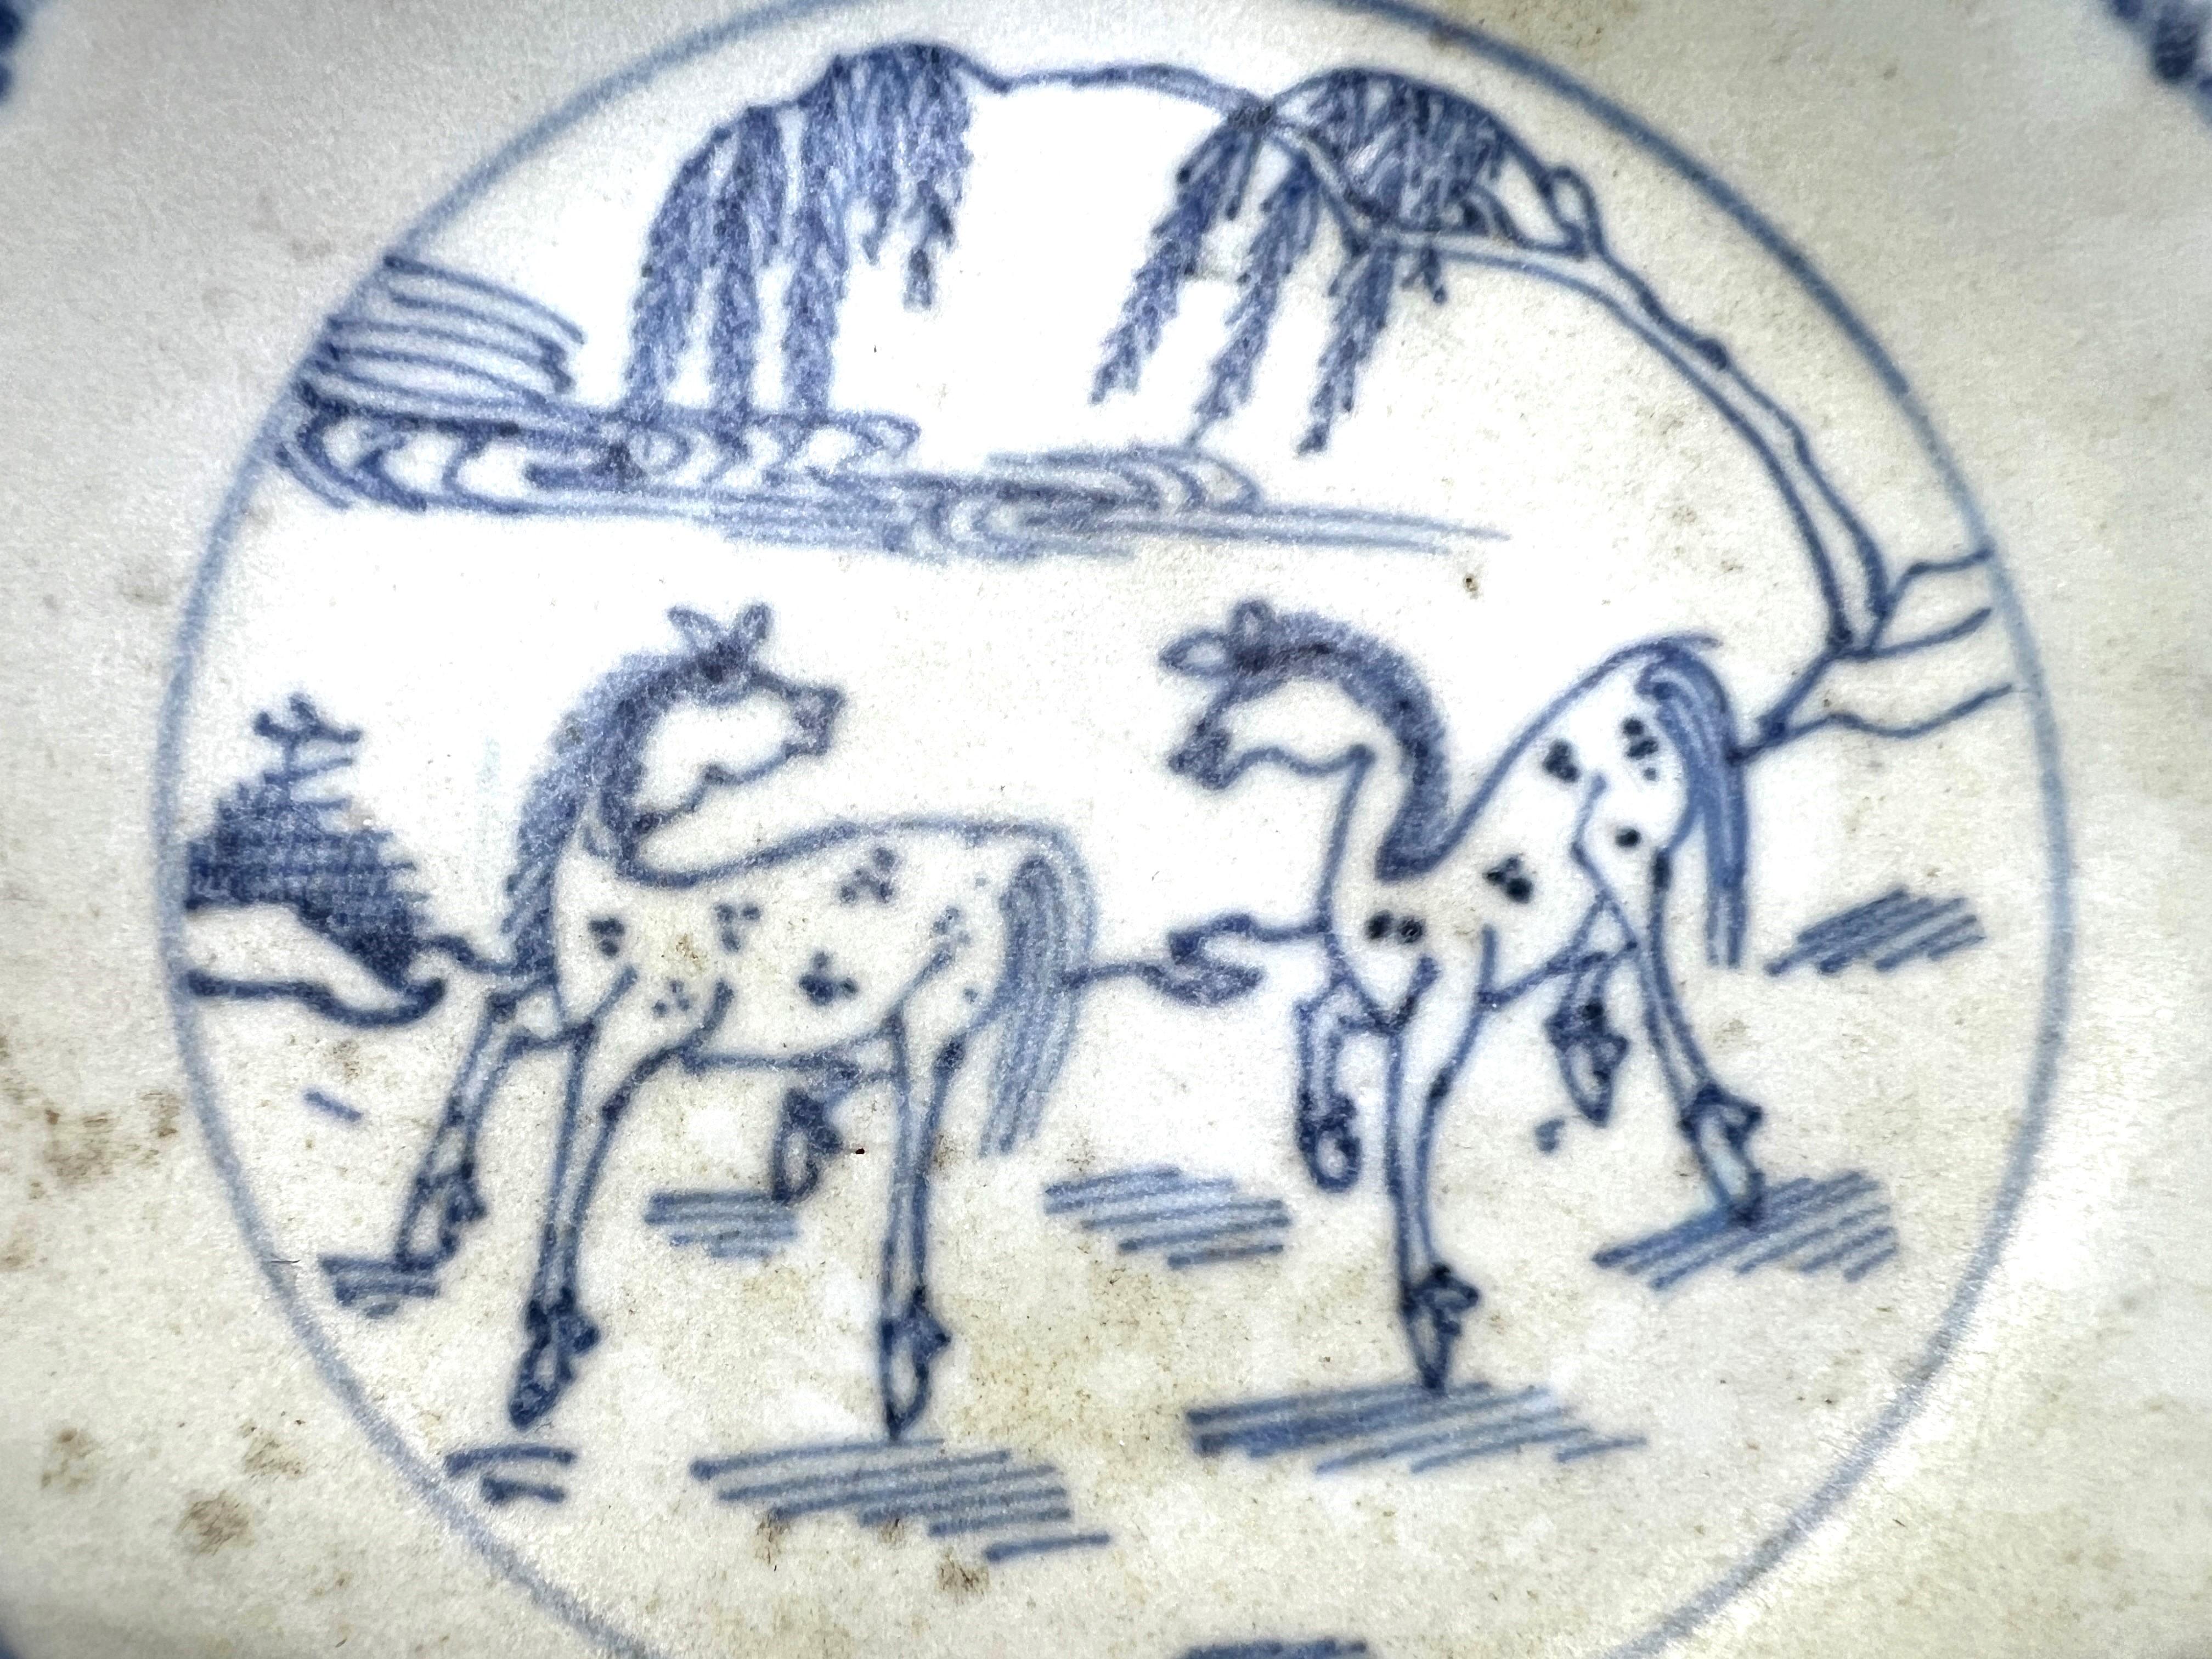 Die Innenseite ist mit zwei gefleckten Pferden bemalt, die unter einem Weidenbaum spielen, die Außenseite mit einer Cafe-au-lait-Glasur.

Zeitraum : Qing-Dynastie, Yongzheng-Periode
Herstellungsdatum : C 1725
Hergestellt in: Jingdezhen
Reiseziel :